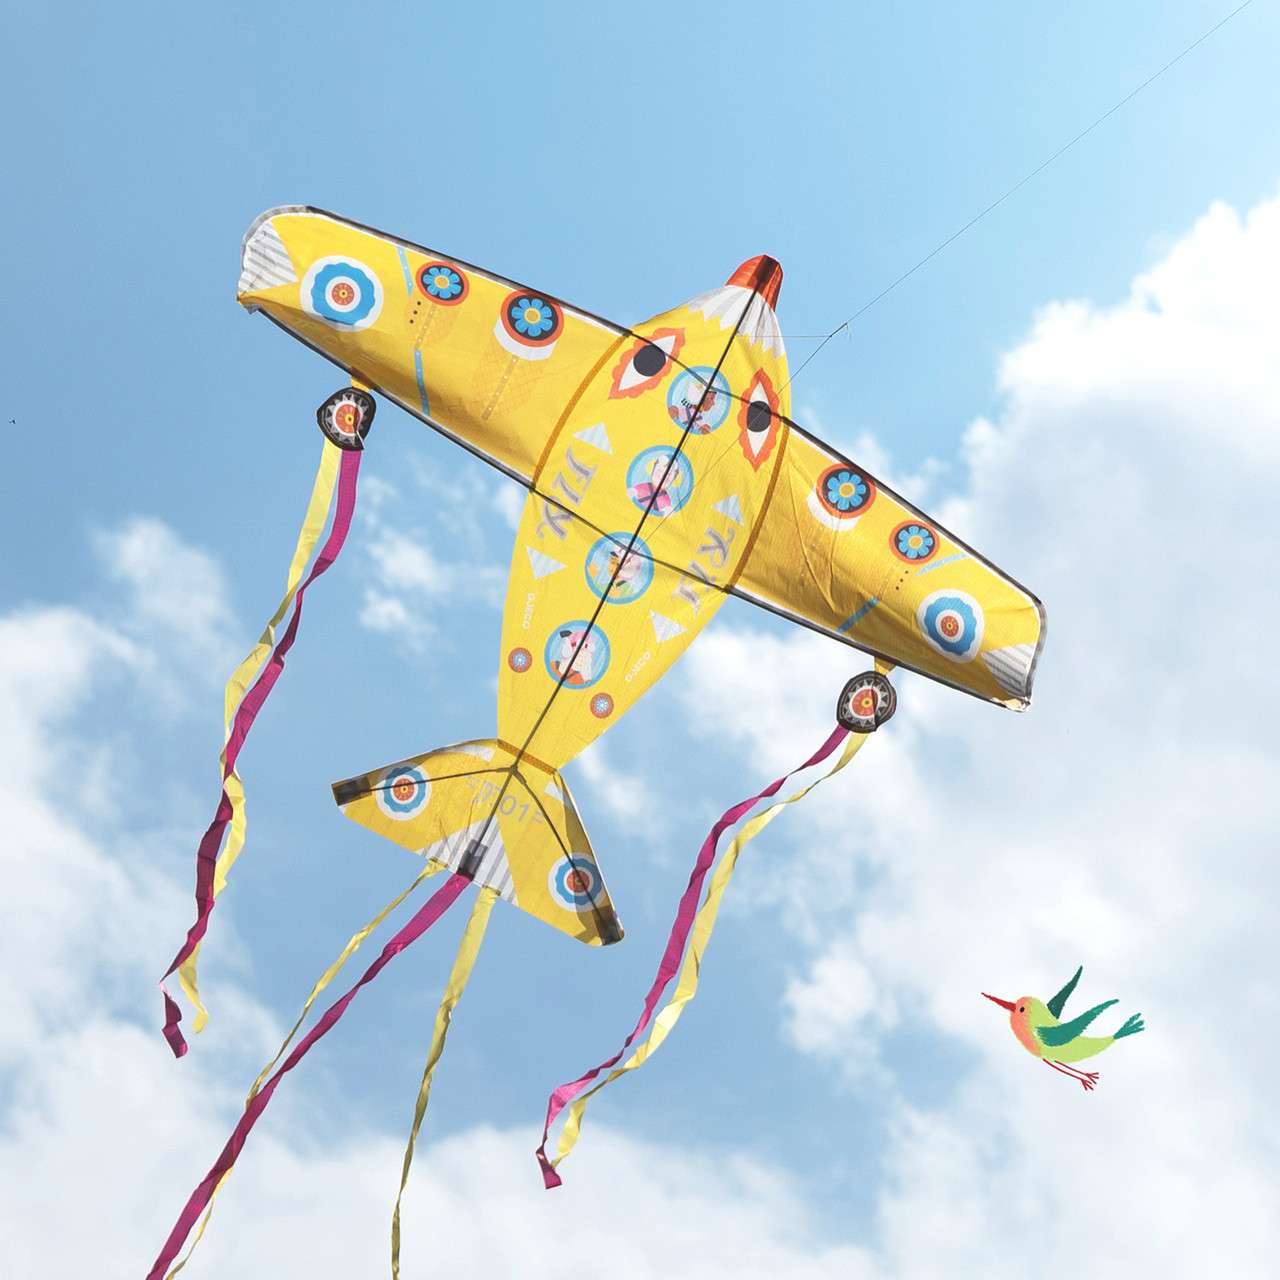 Giant Maxi Plane Kite 1